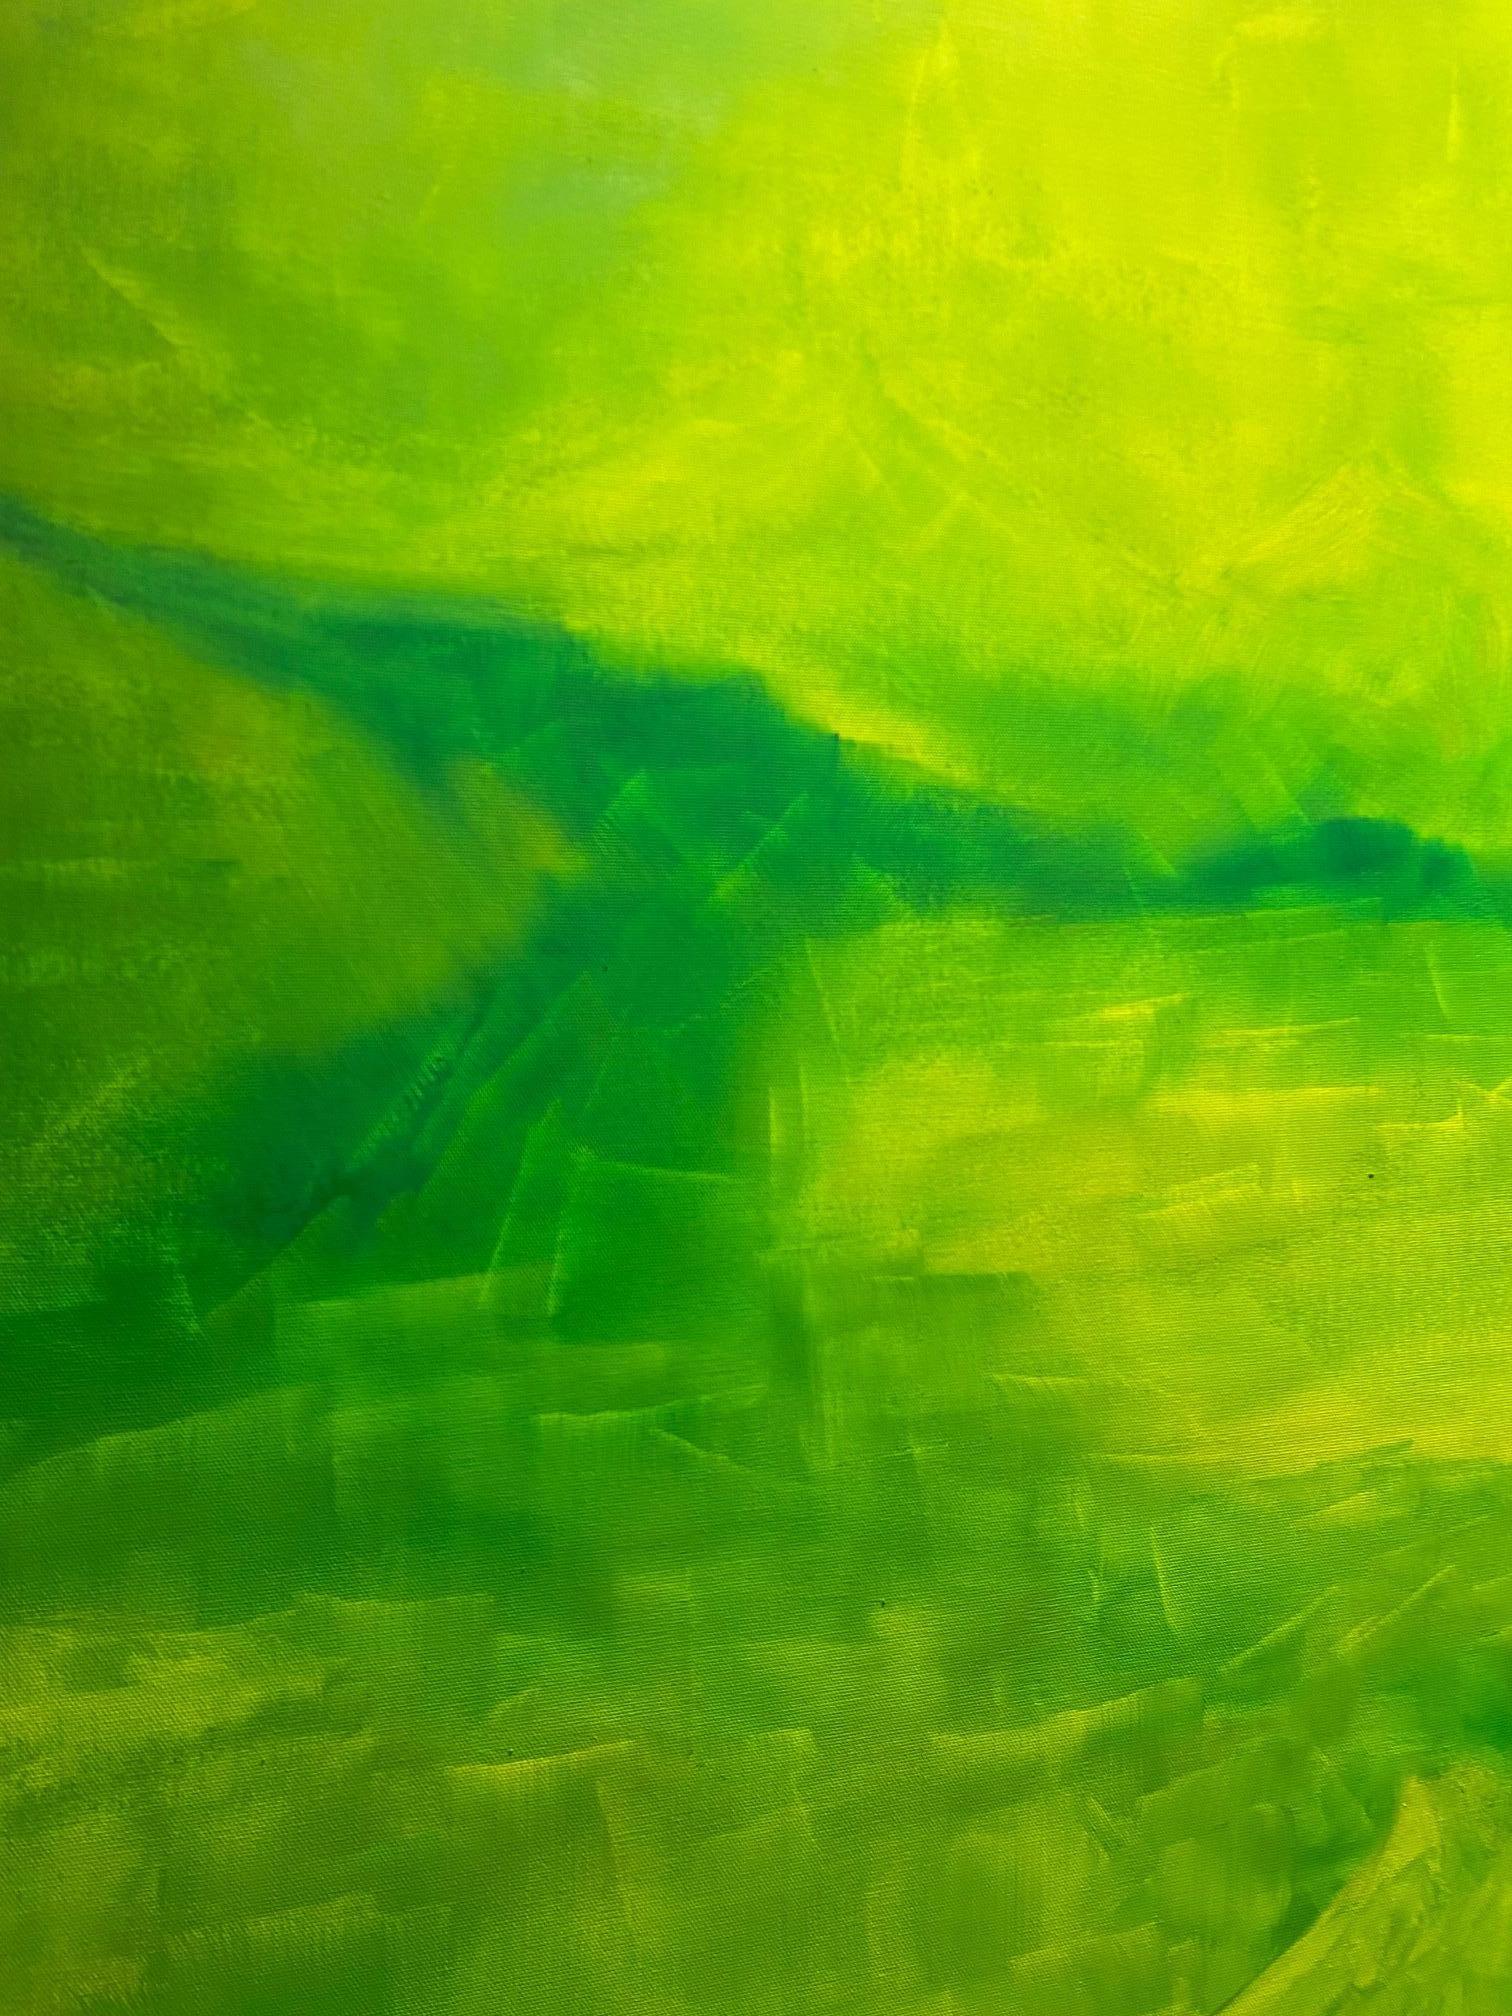 Sans titre - peinture abstraite expressionniste contemporaine, paysage vert - Expressionnisme abstrait Painting par Willi Bucher